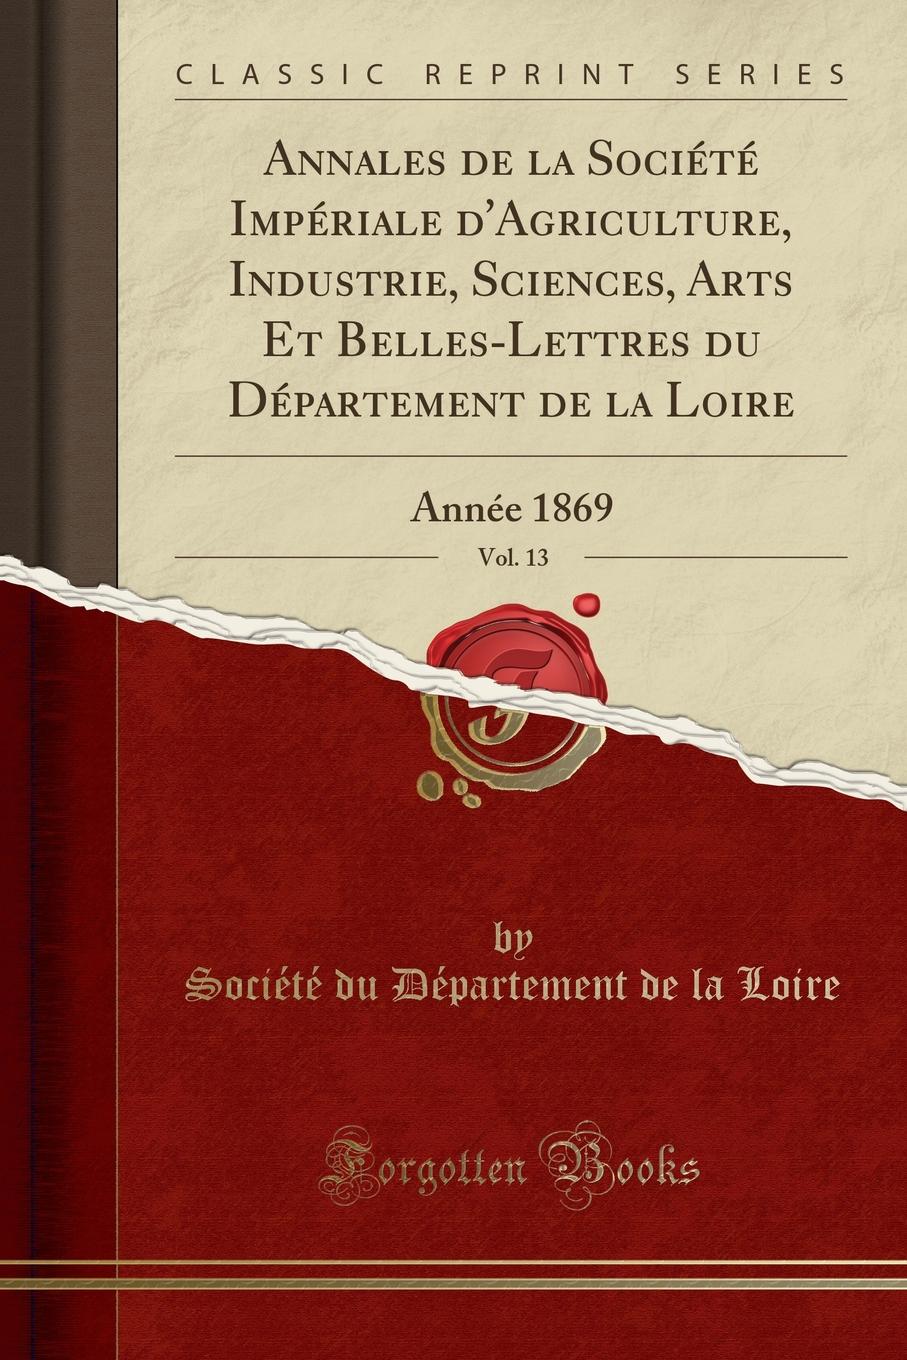 фото Annales de la Societe Imperiale d.Agriculture, Industrie, Sciences, Arts Et Belles-Lettres du Departement de la Loire, Vol. 13. Annee 1869 (Classic Reprint)